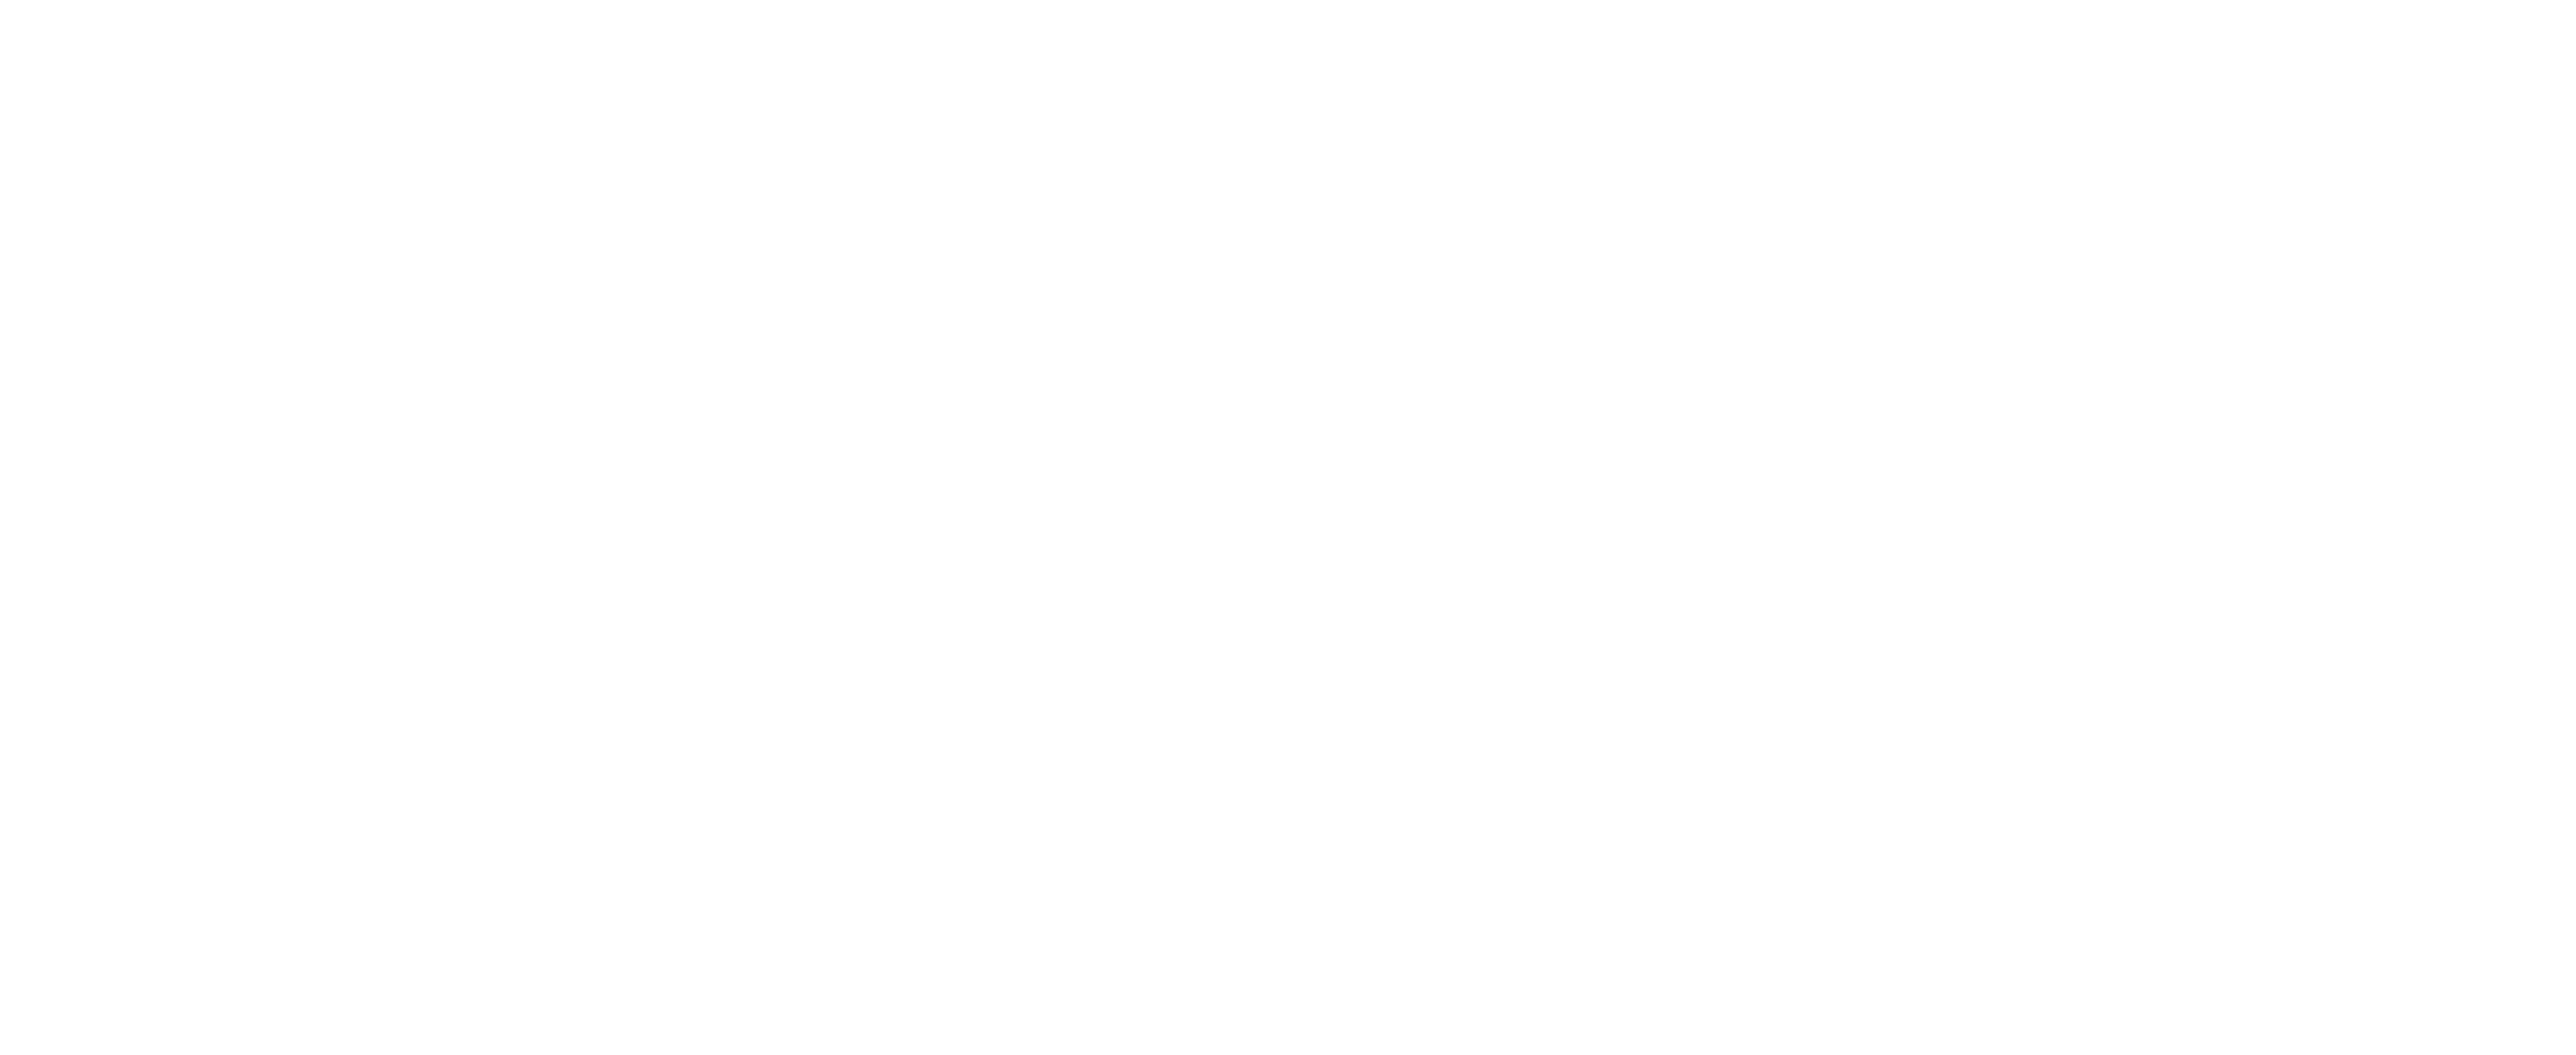 BTG Pactual Digital